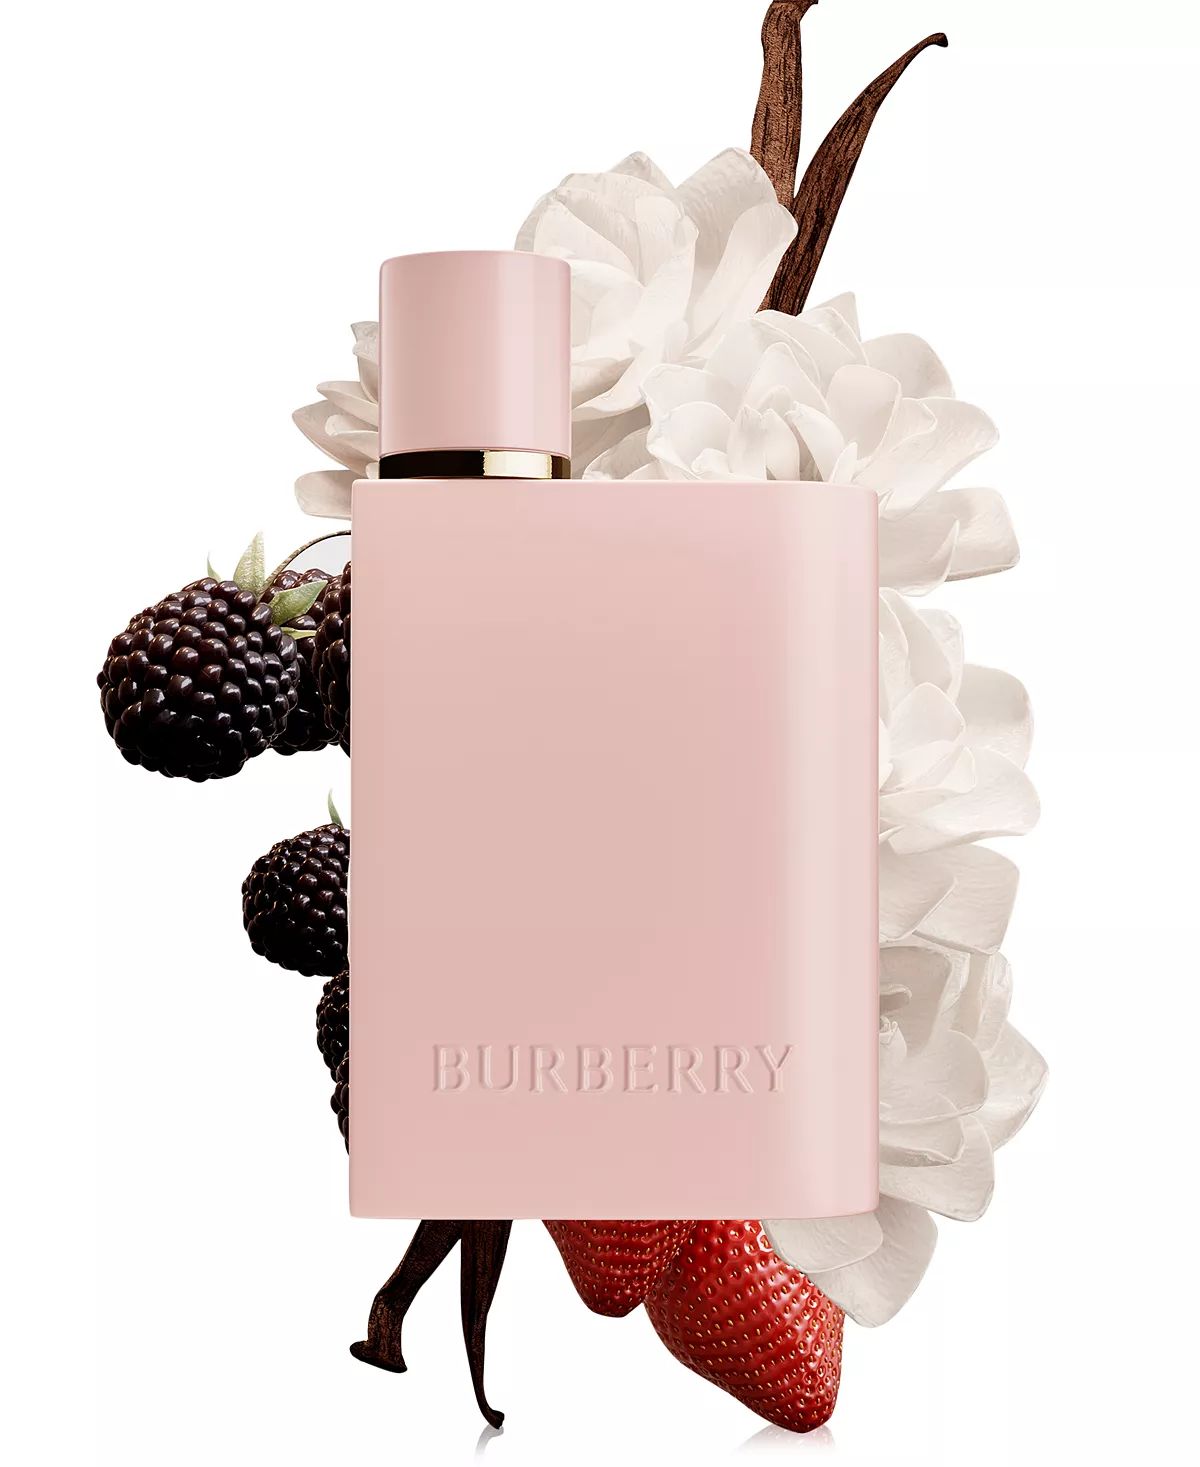 Burberry Her Elixir de Parfum - Burberry - Gallery 3